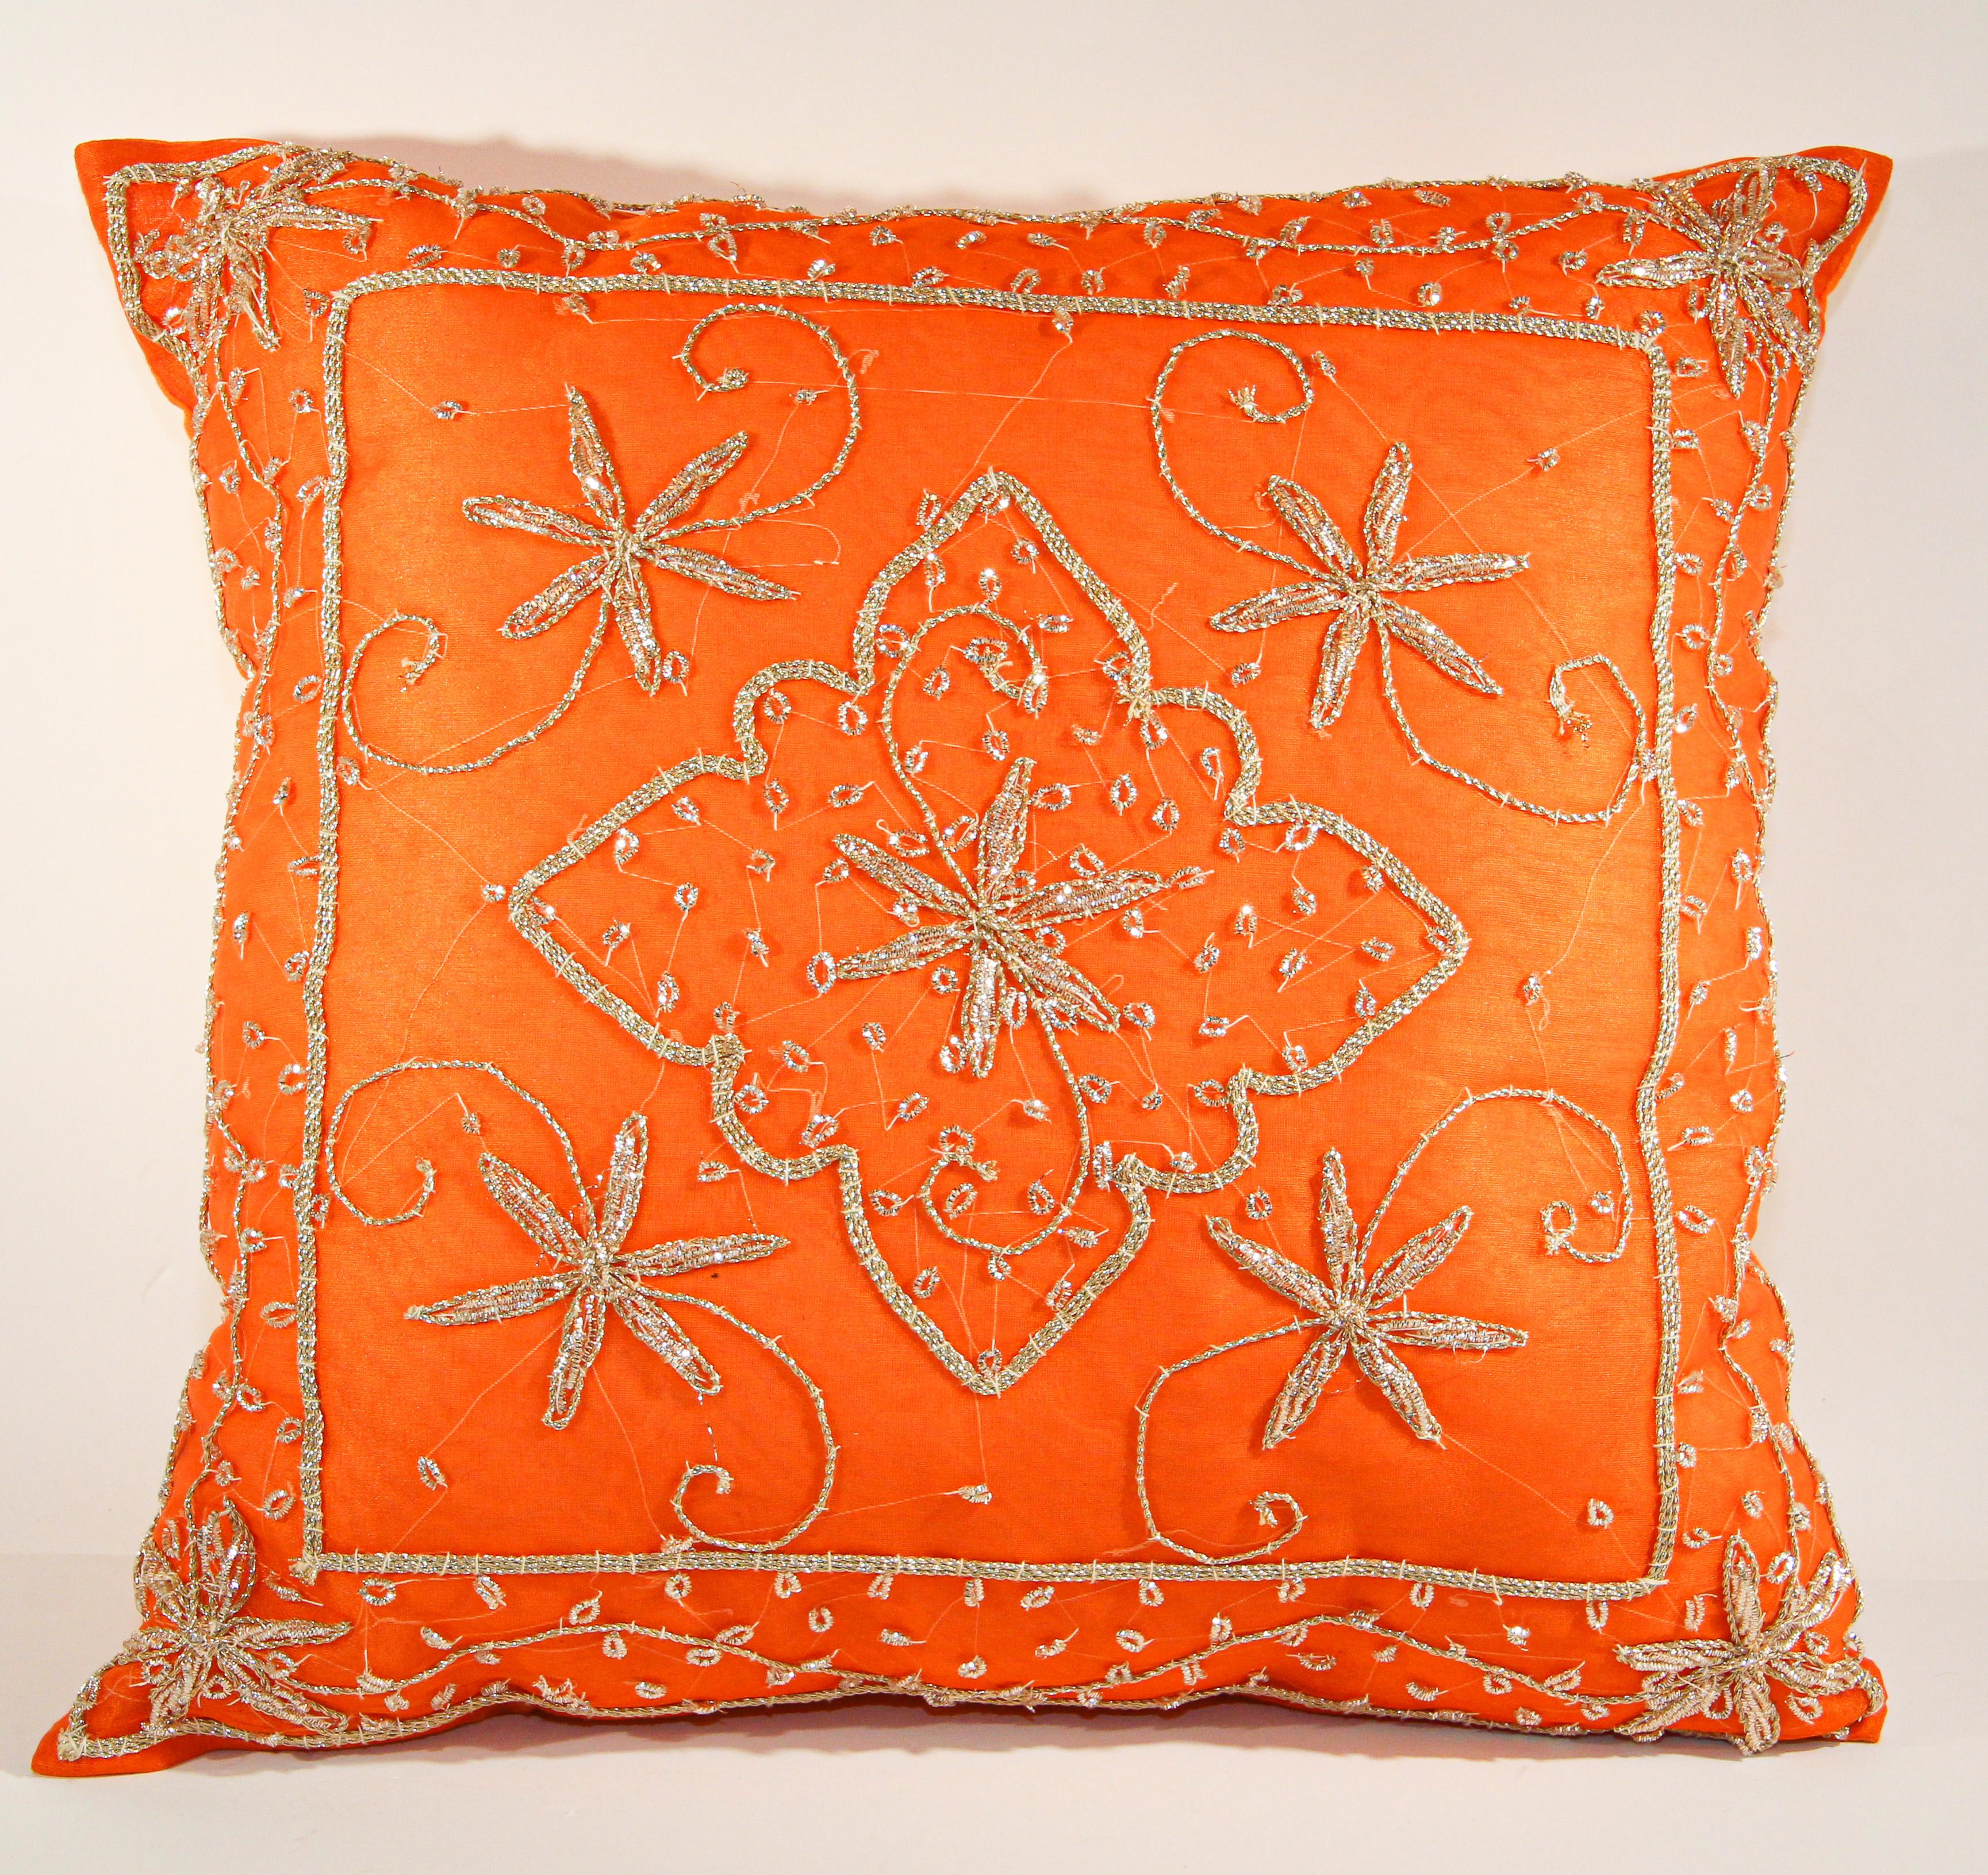 Throw dekorativen Akzent orange Kissen bestickt und Pailletten mit stark verschönert Grenze der metallischen maurischen Fäden, Silberperlen Stickerei auf orange Grund schillernden Blumen und Ranken.
Ideal, um Eleganz und Luxus in Ihr marokkanisches